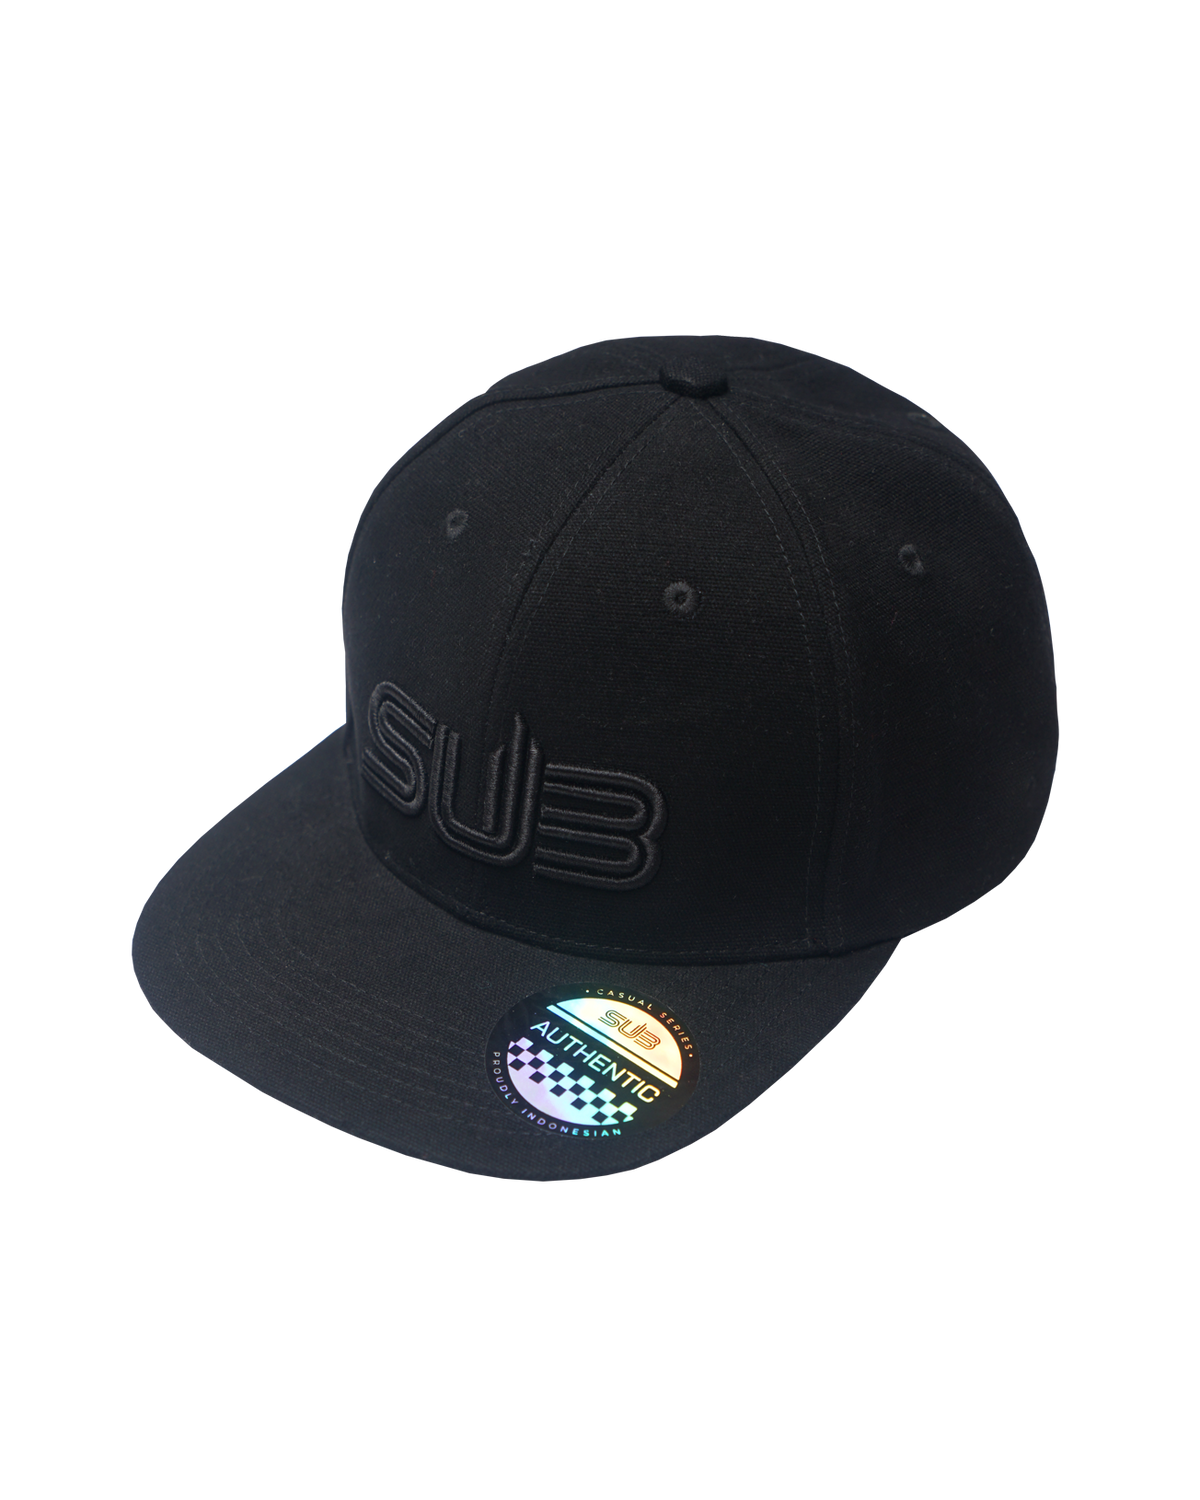 SUB 3D Caps Black